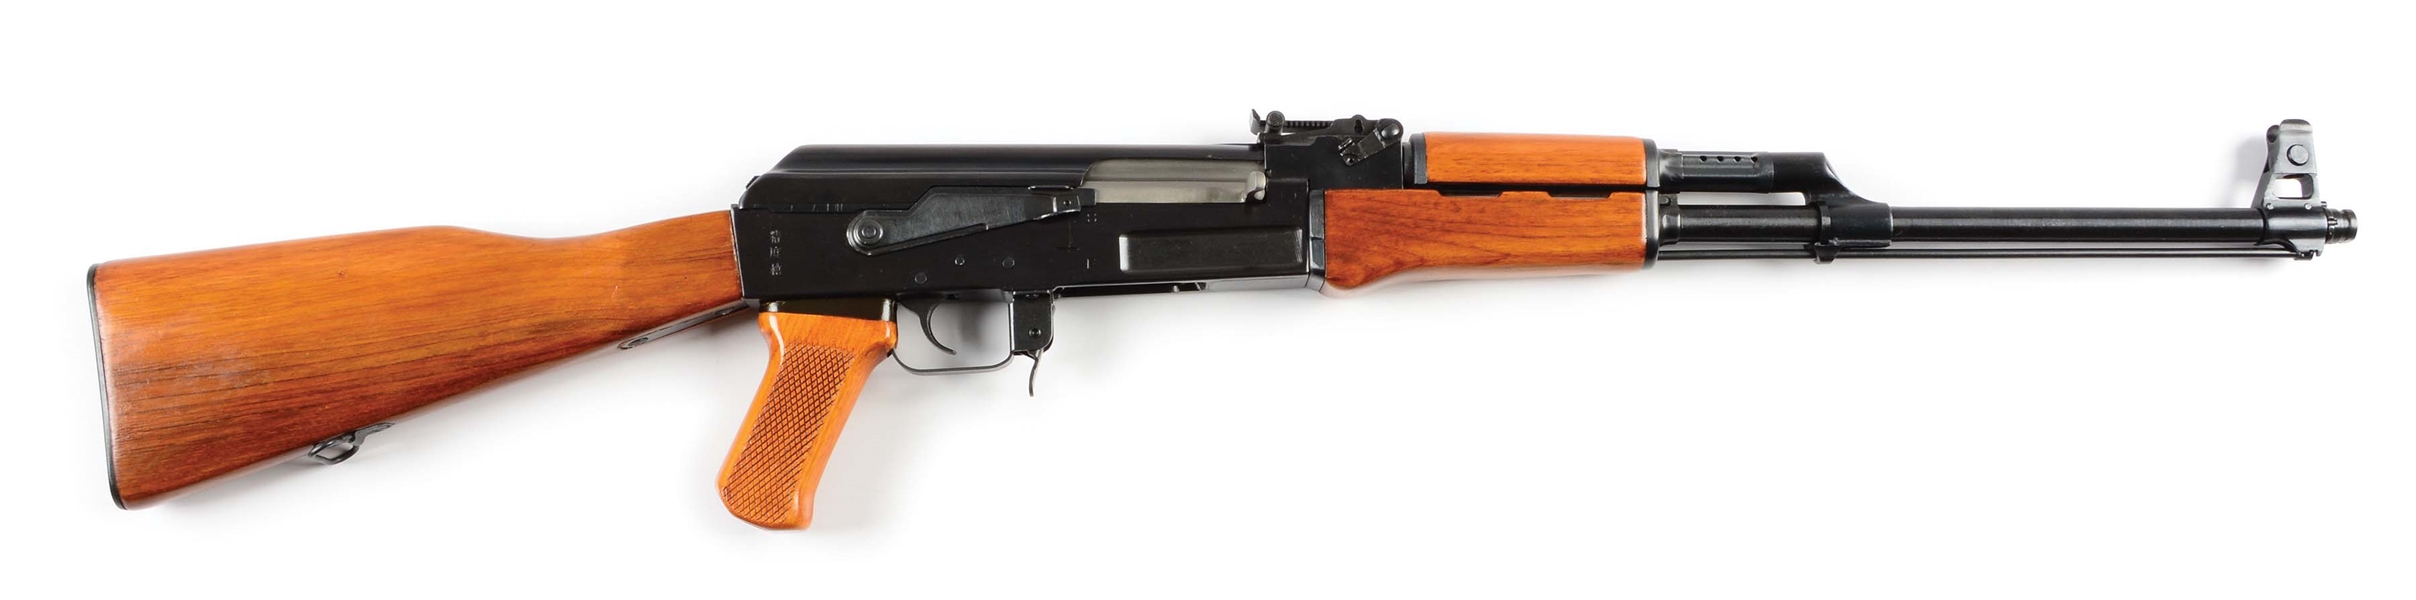 (M) POLY TECH NATIONAL MATCH AK-47/S SEMI-AUTOMATIC RIFLE..